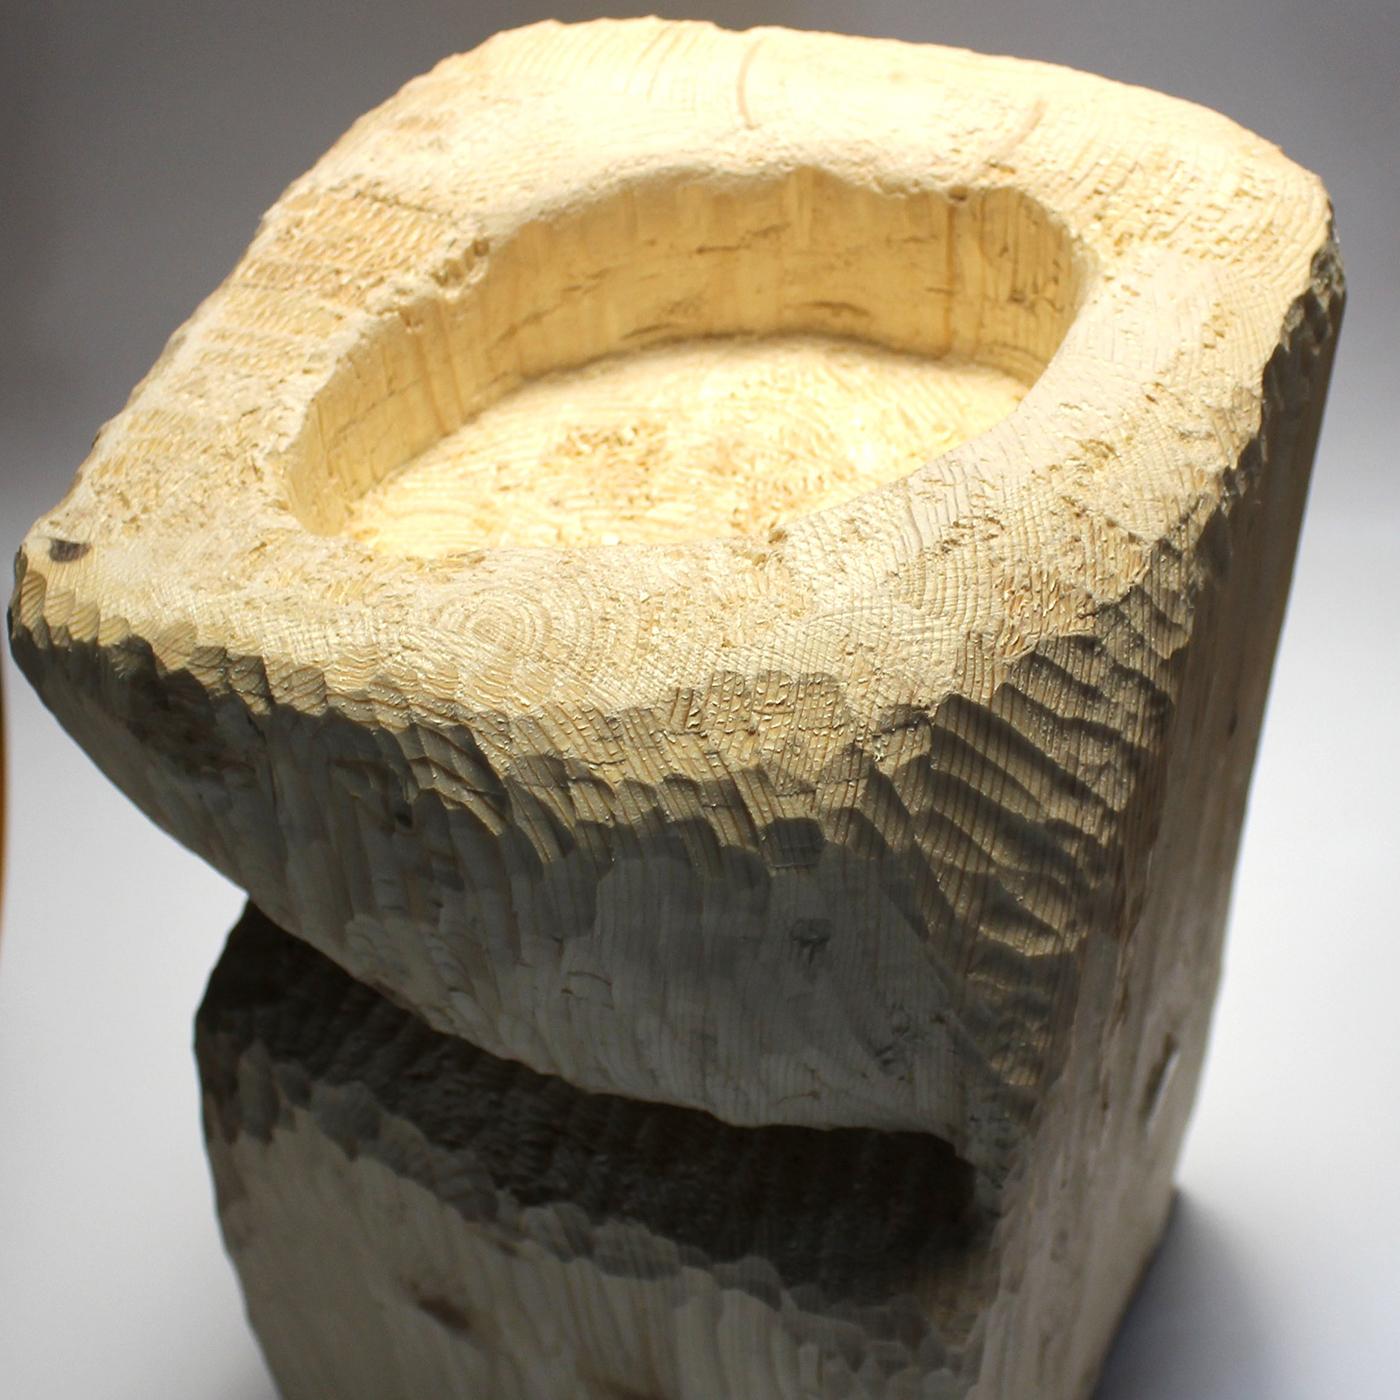 Défini par une approche organique des détails visuels et texturaux, ce vase conçu par Pietro Meccani est une œuvre d'art remarquable. La forme en bois massif évoque la texture de l'écorce d'un arbre obtenue en sculptant grossièrement et à la main